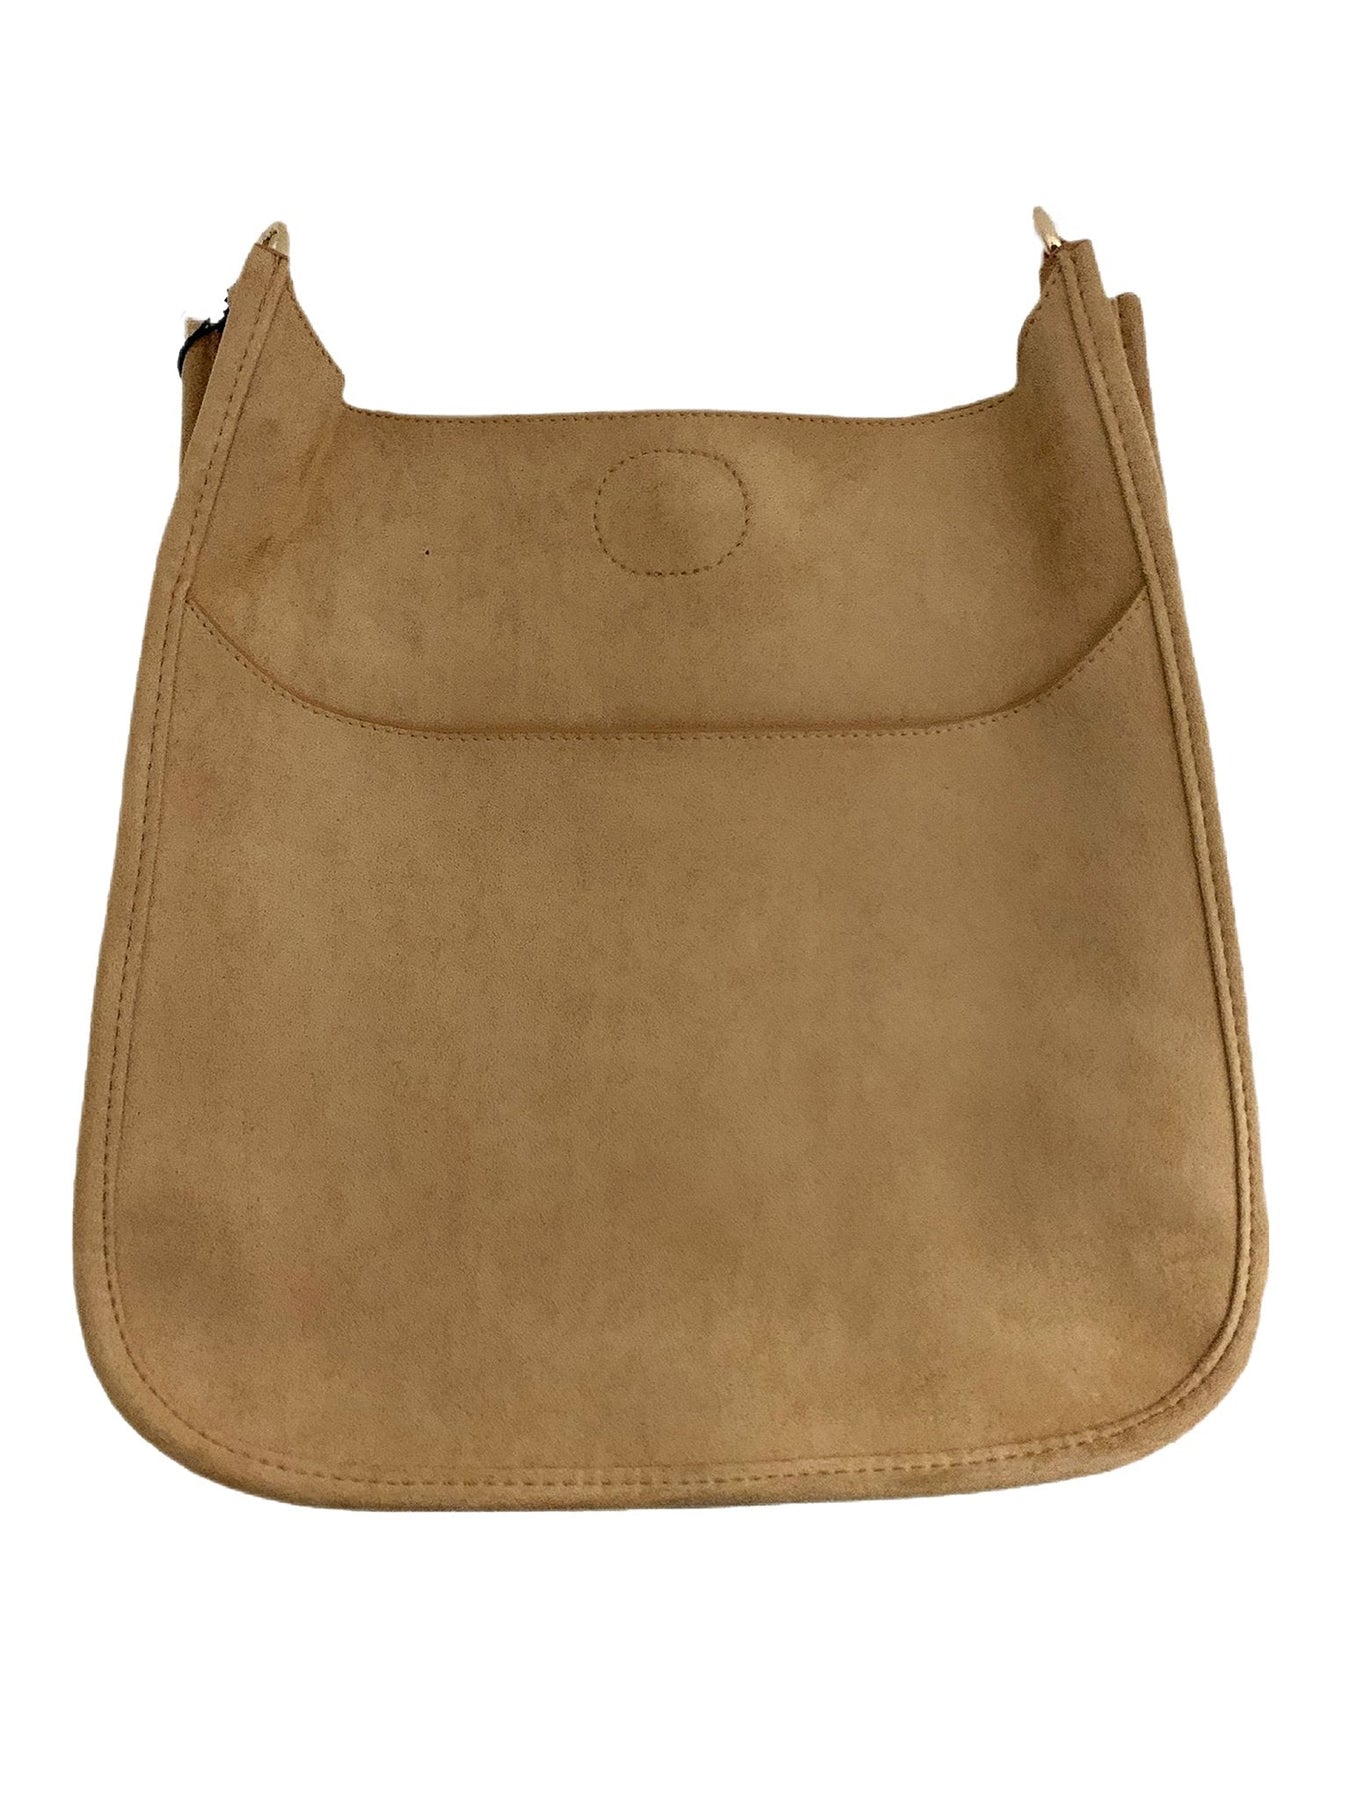 AhDorned Vegan Suede Mini Messenger Bag - No Strap – Yogi's Closet